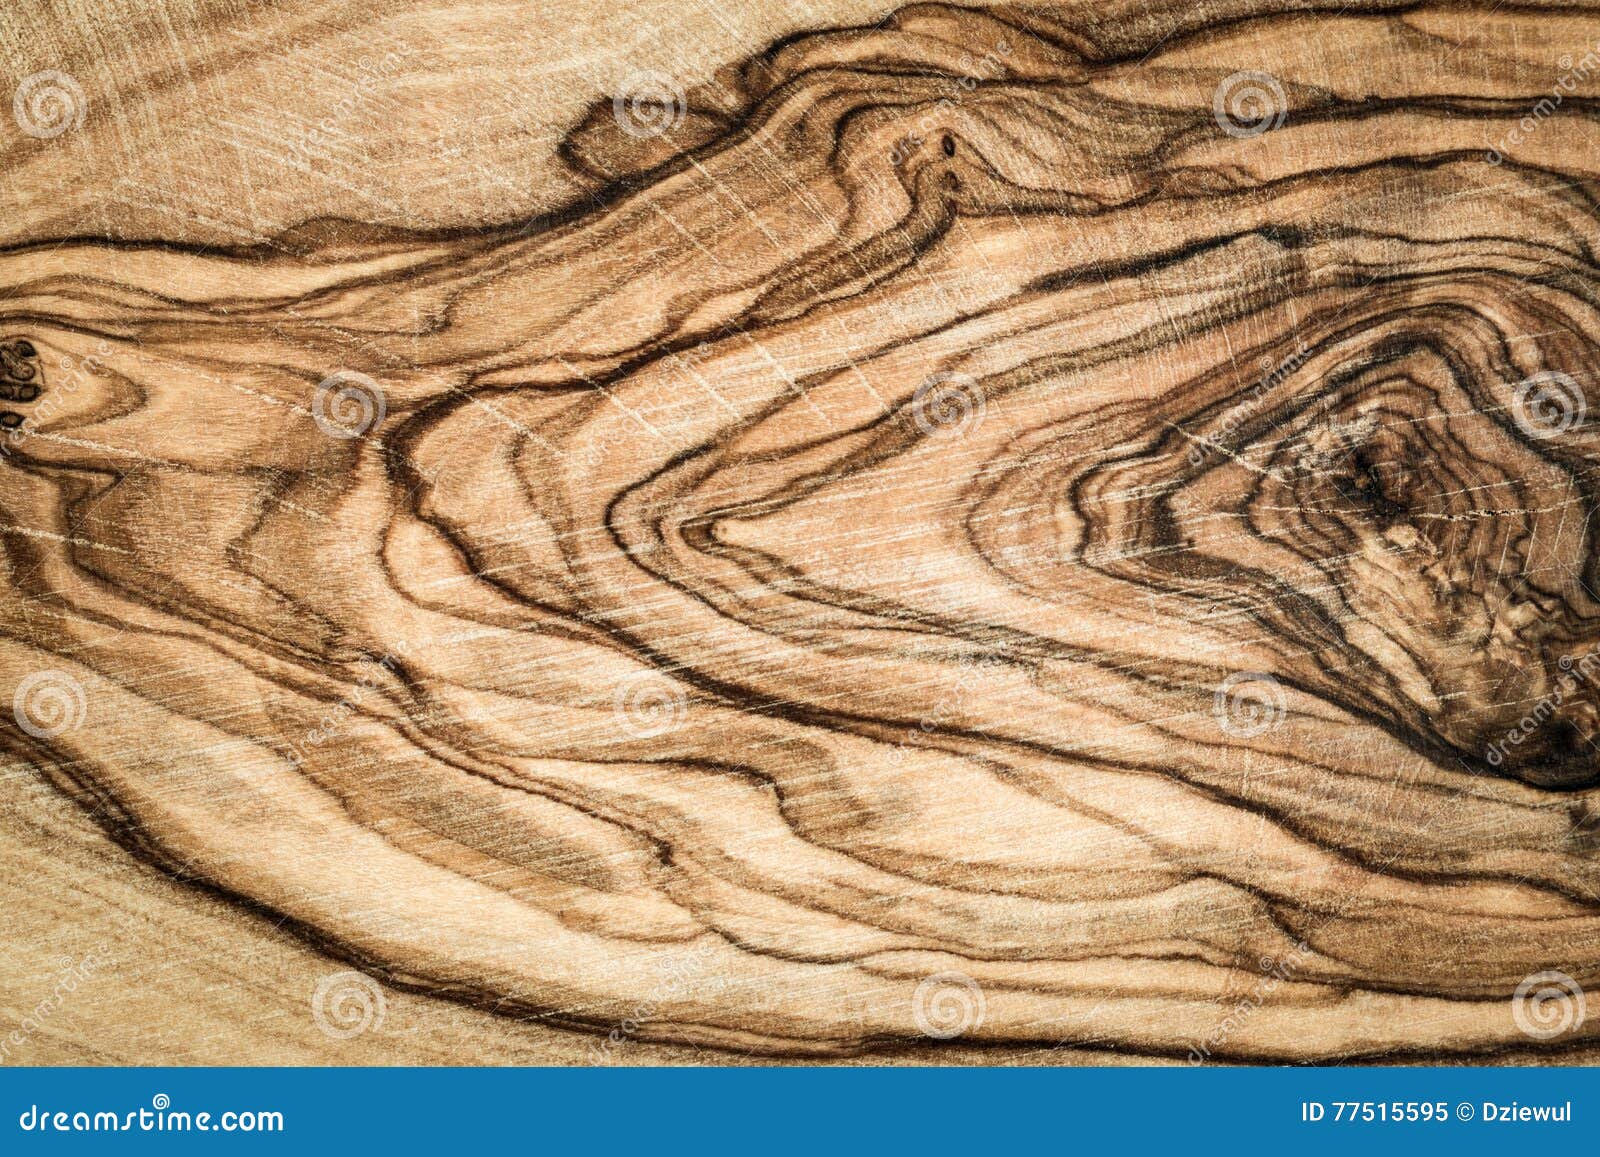 Glimlach botsen calorie Het hout van de olijf stock afbeelding. Image of bruin - 77515595